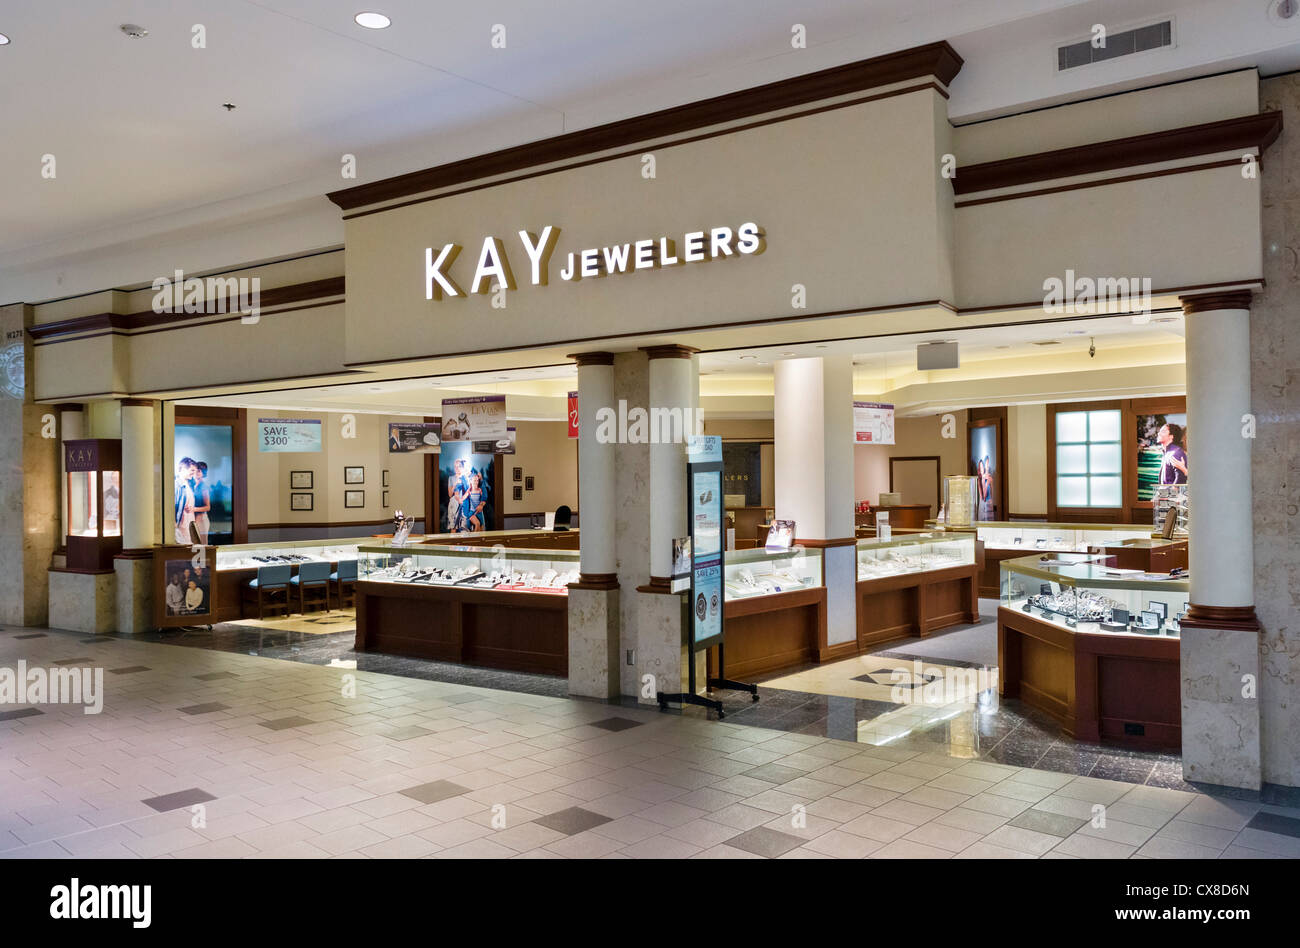 Dans la Boutique des Joailliers Kay Mall of America, Minneapolis, Minneapolis, Minnesota, USA Banque D'Images